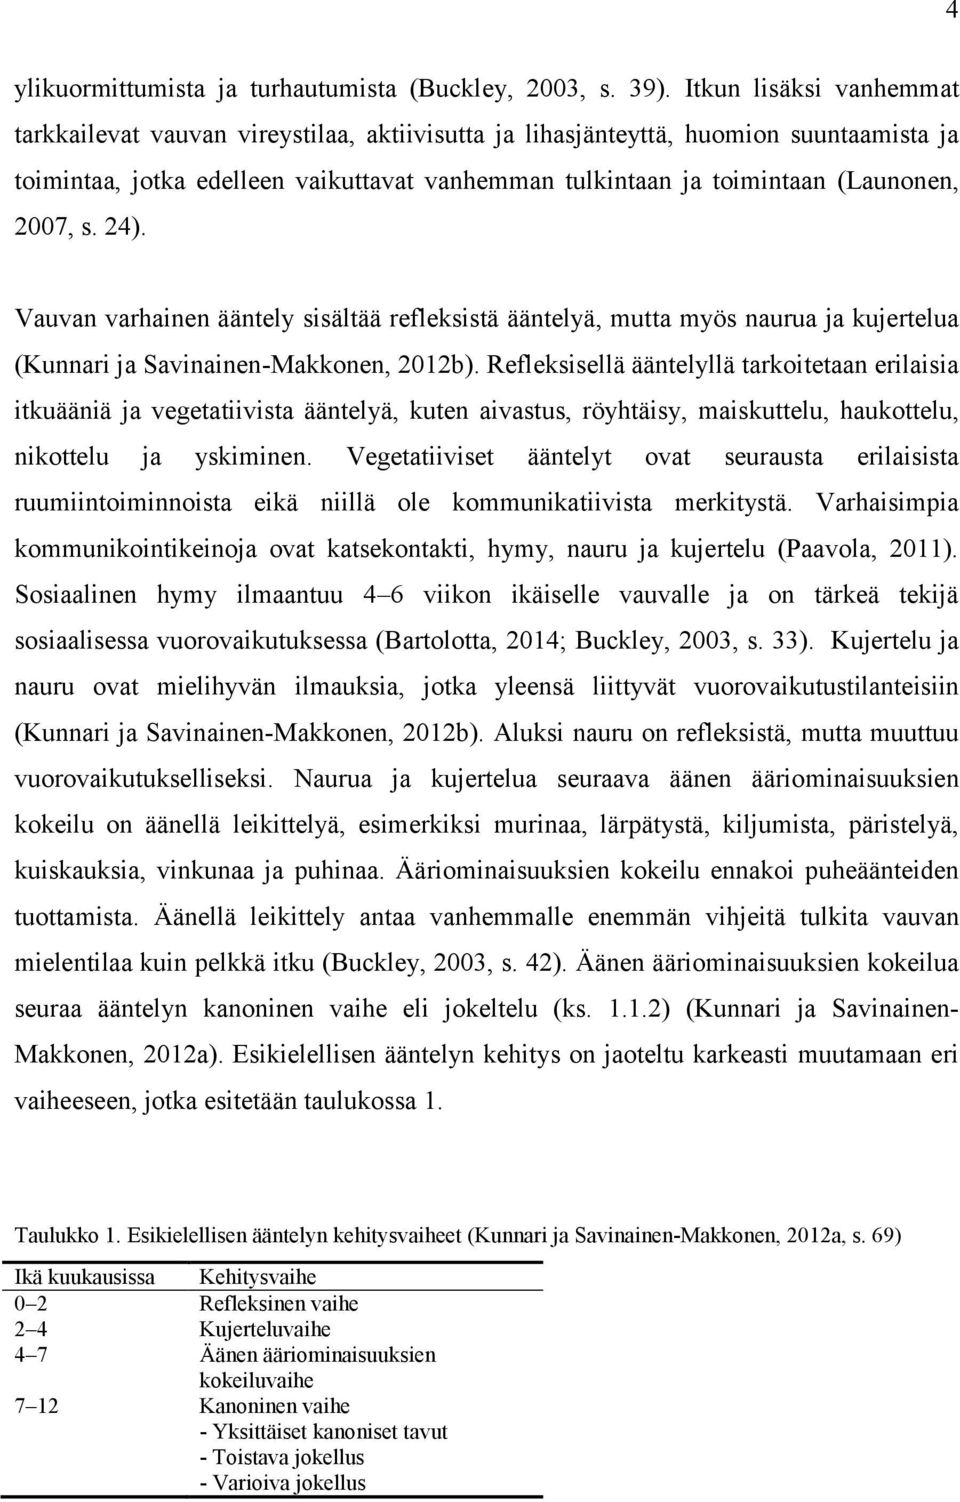 2007, s. 24). Vauvan varhainen ääntely sisältää refleksistä ääntelyä, mutta myös naurua ja kujertelua (Kunnari ja Savinainen-Makkonen, 2012b).